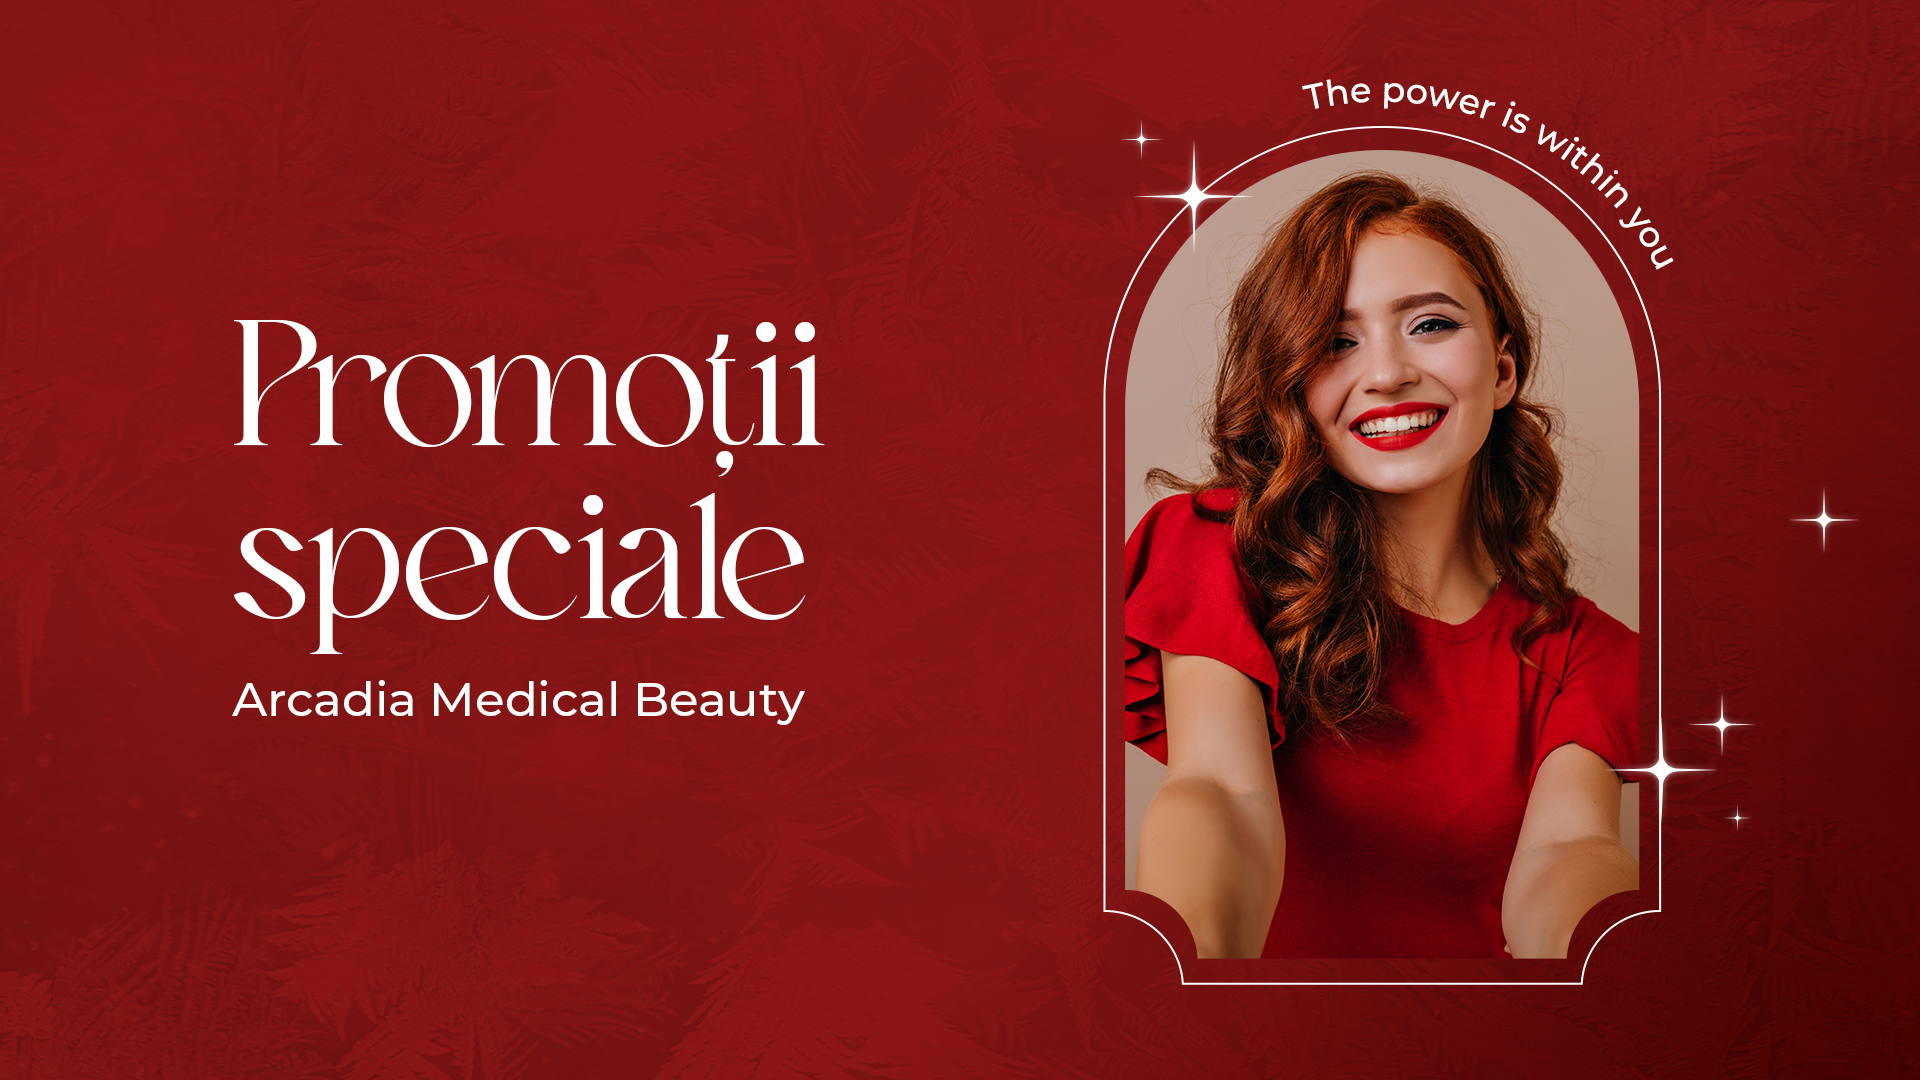 Luna decembrie vine cu promoții speciale la Arcadia Medical Beauty